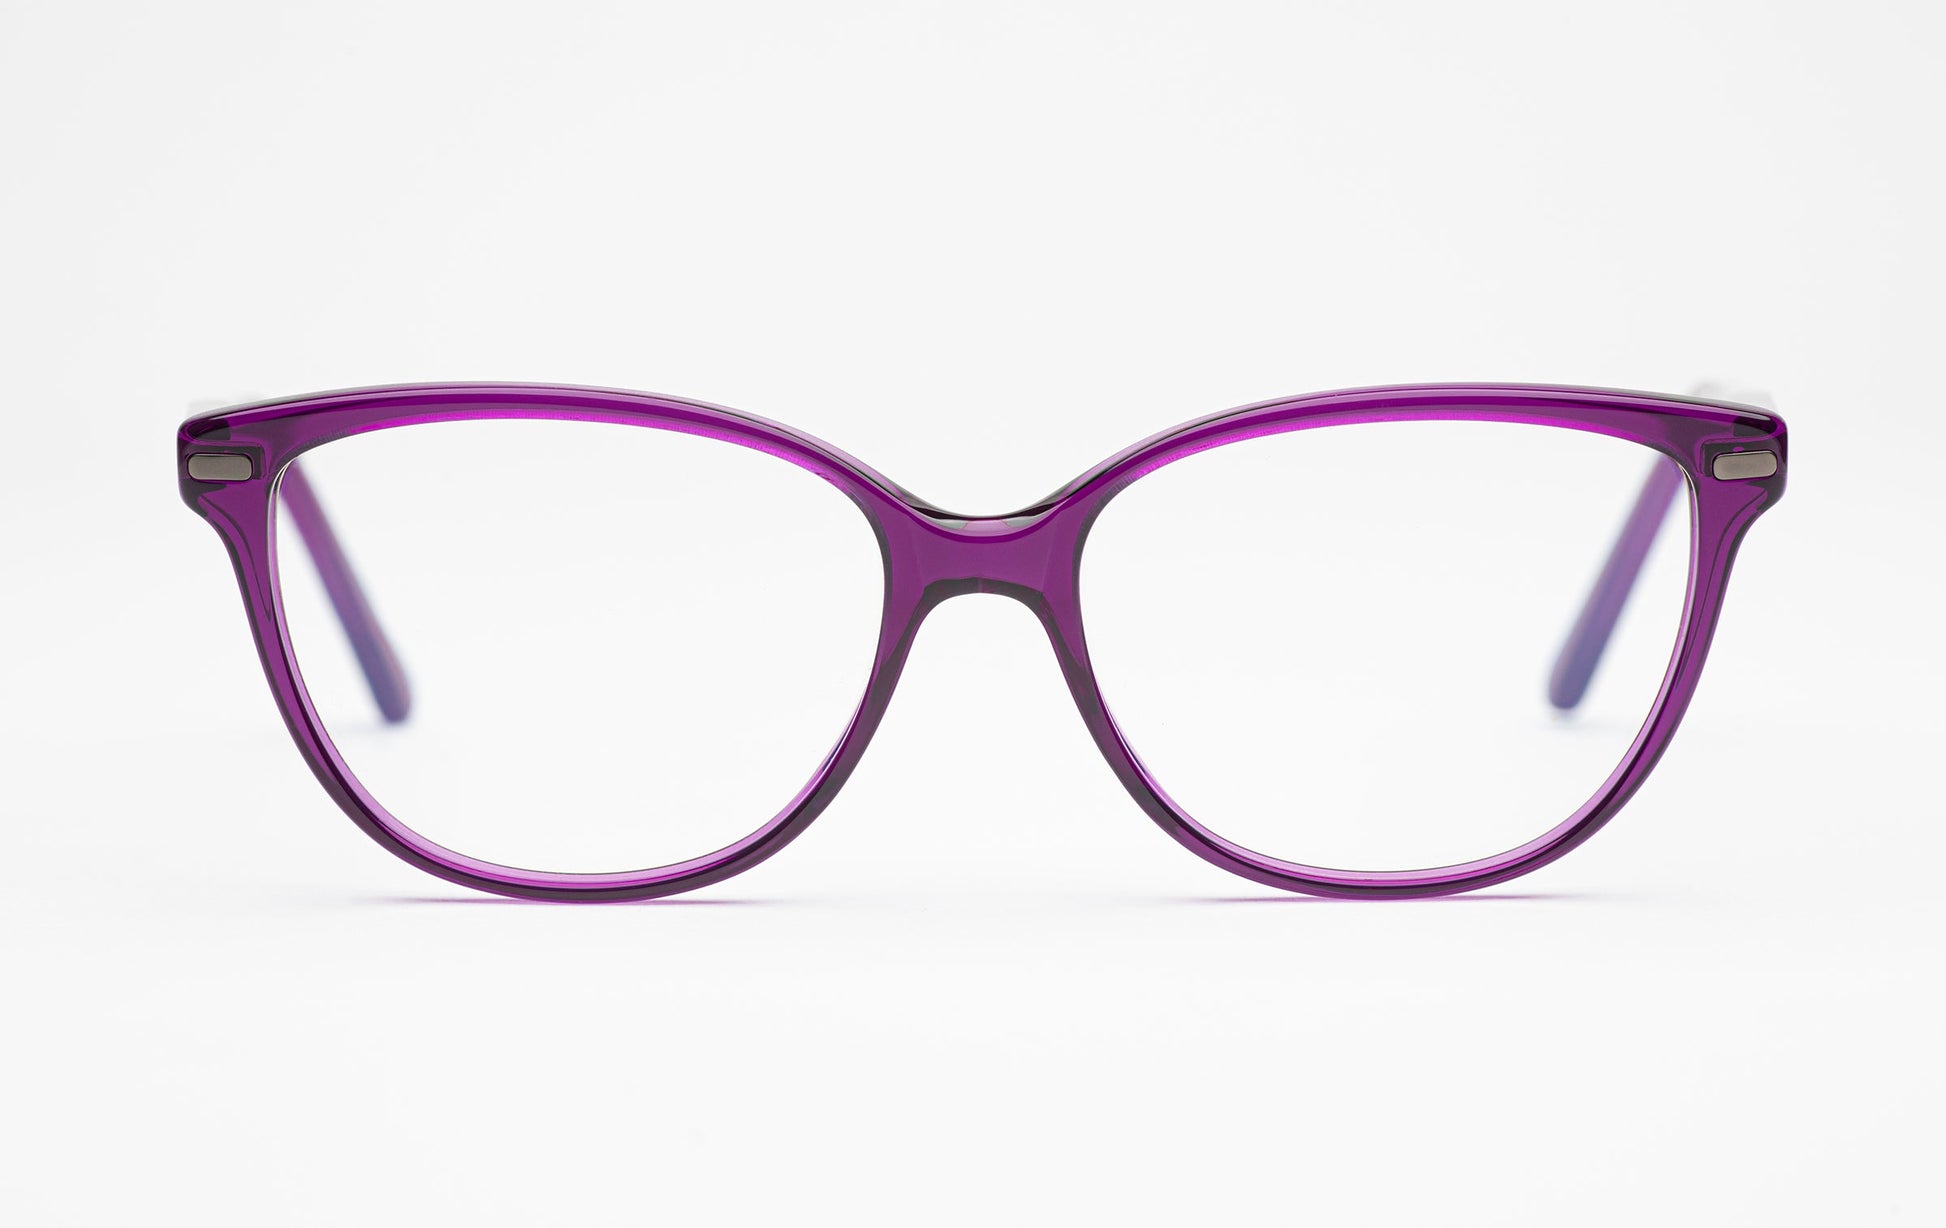 The Humanist 2 | Oval Cat Eye Glasses - Designer Prescription Eyeglasses – Purple